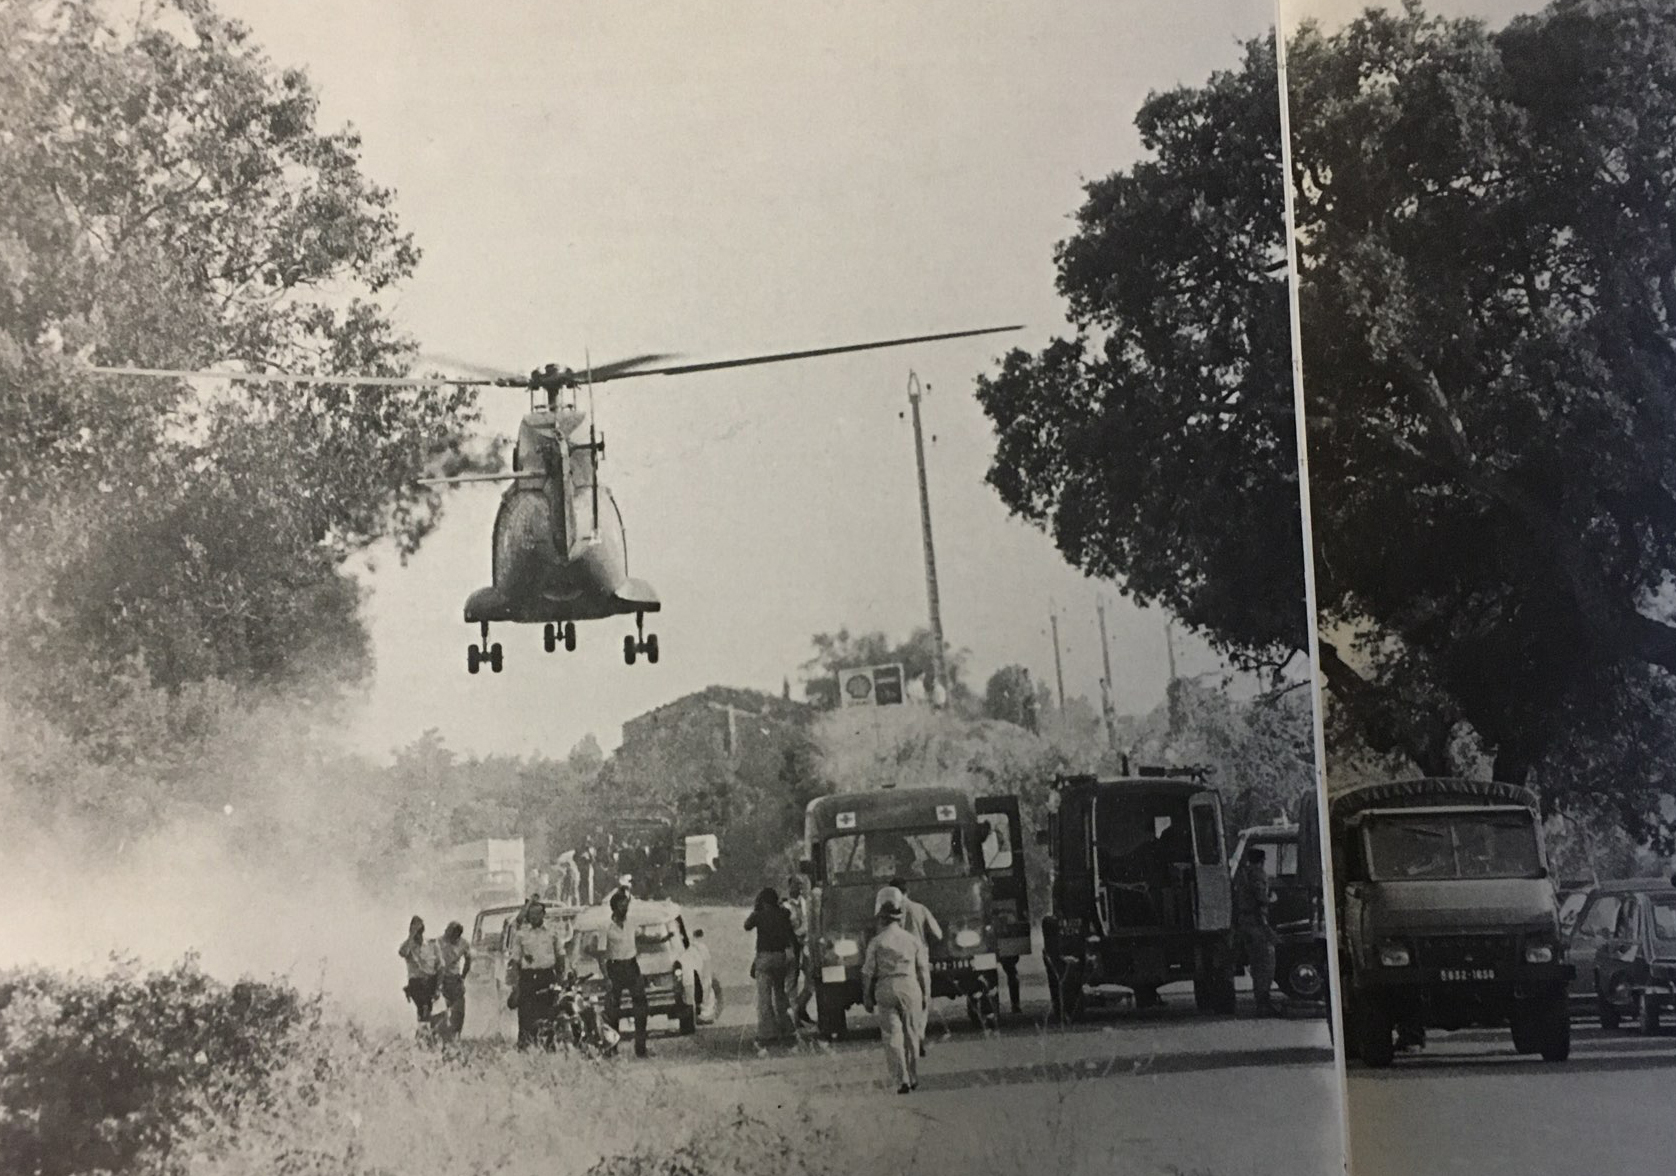 Les événements d'Aleria en 1975